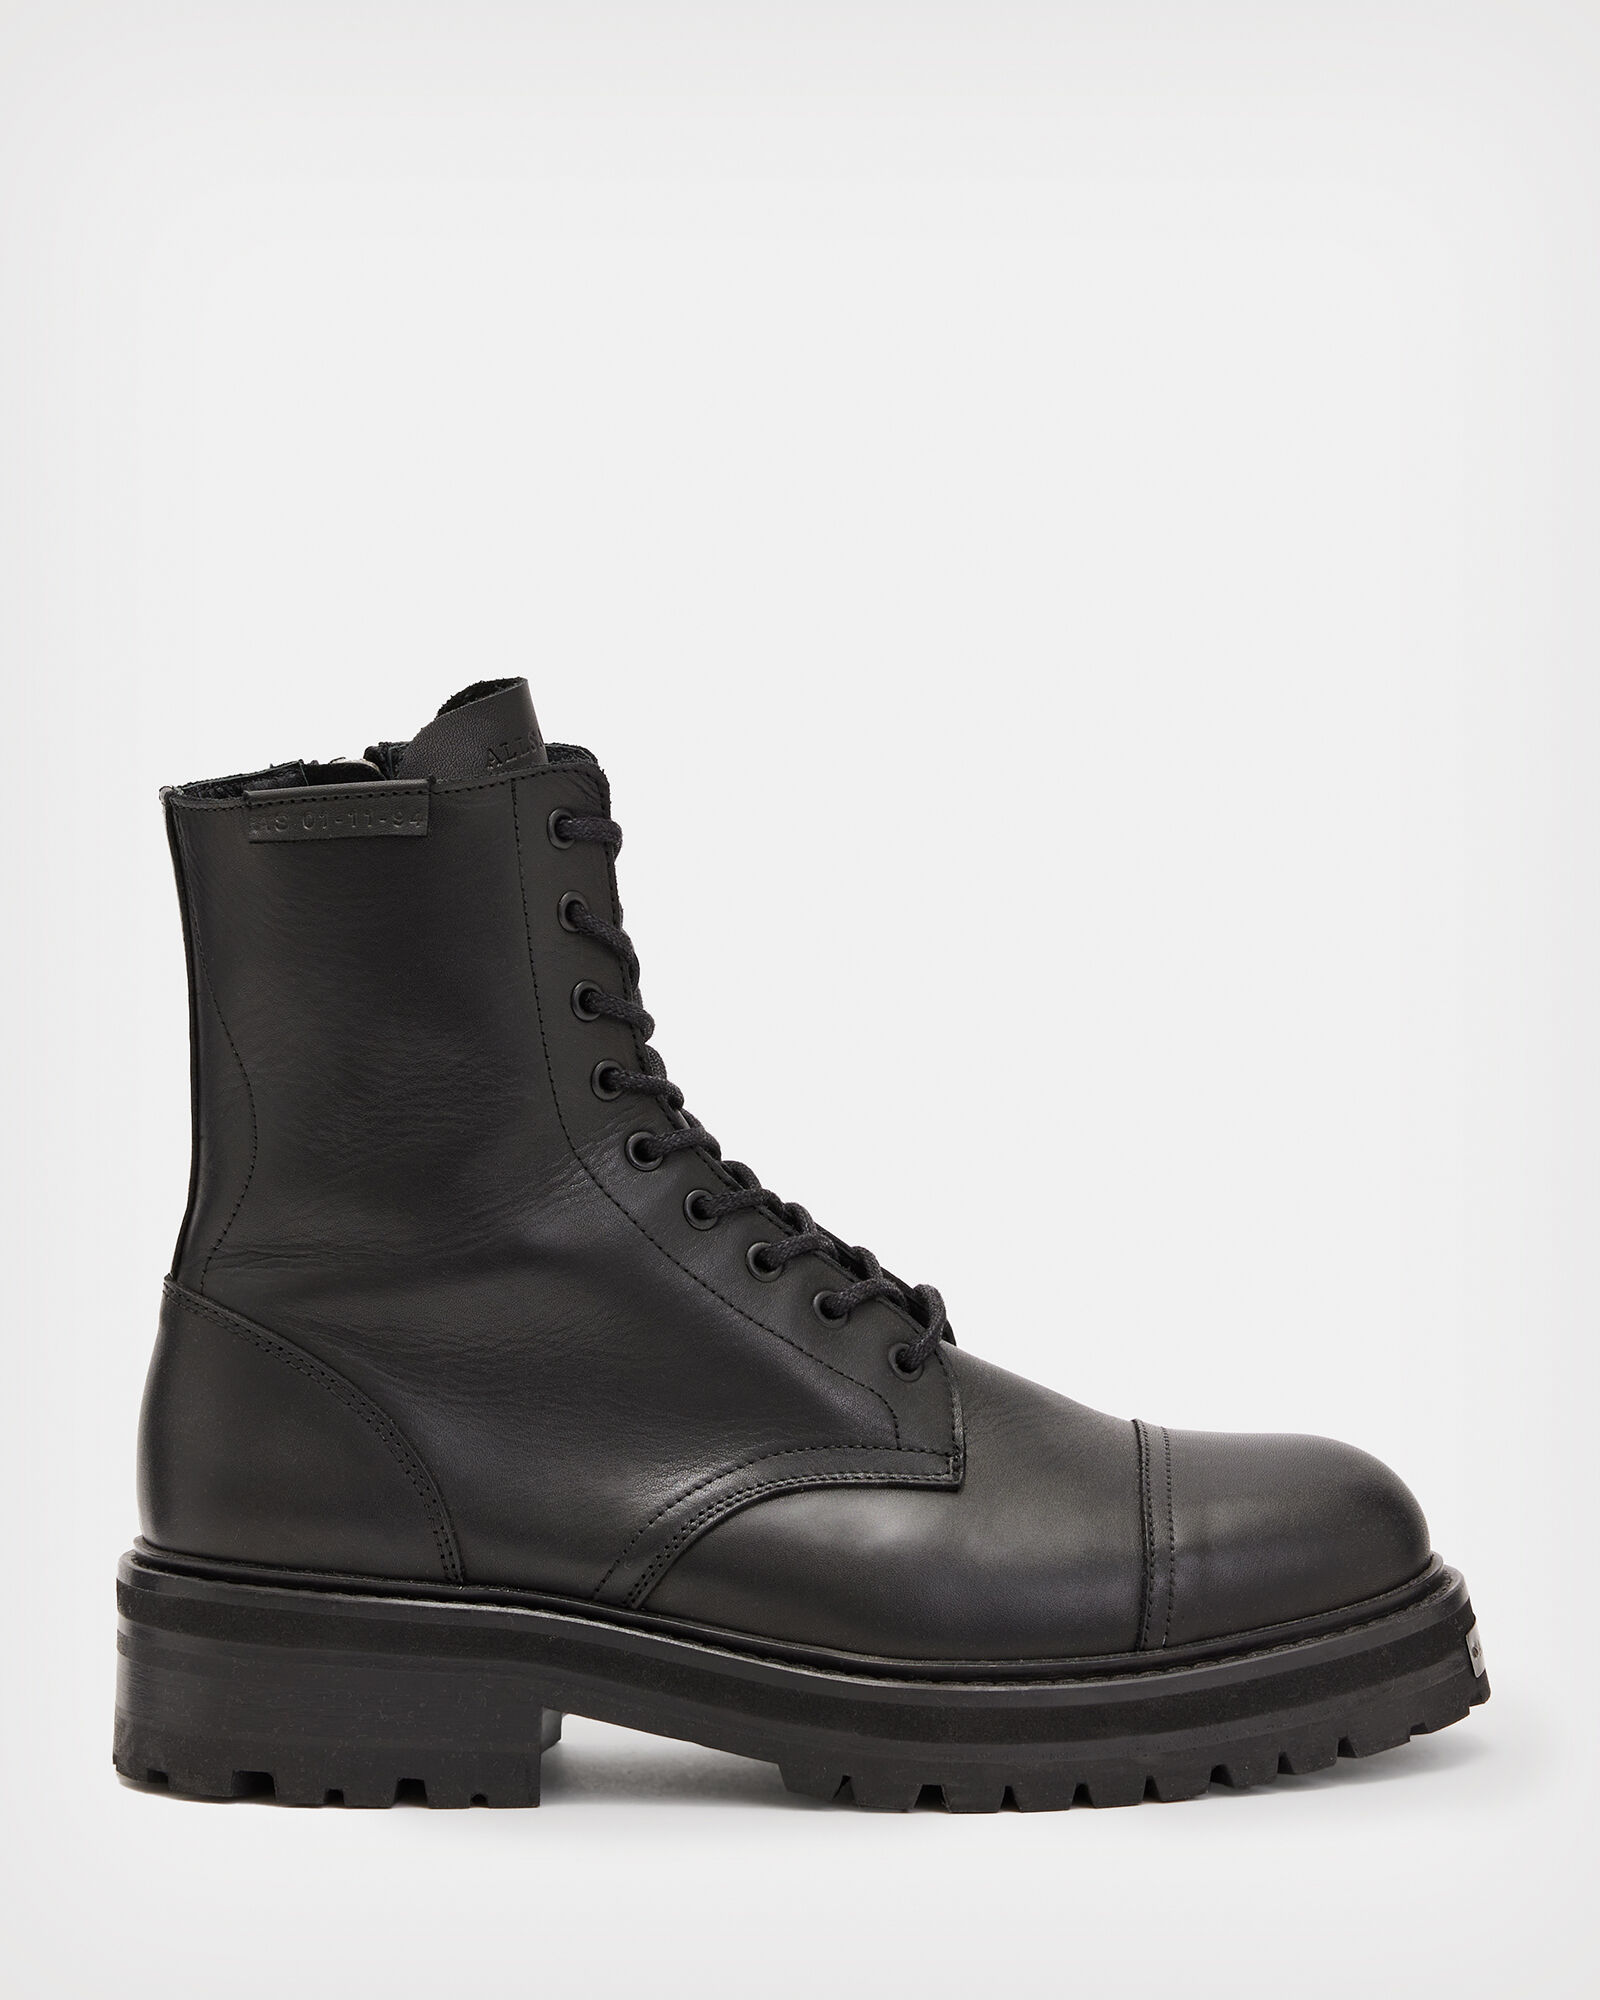 Hank Leather Boots Black | ALLSAINTS